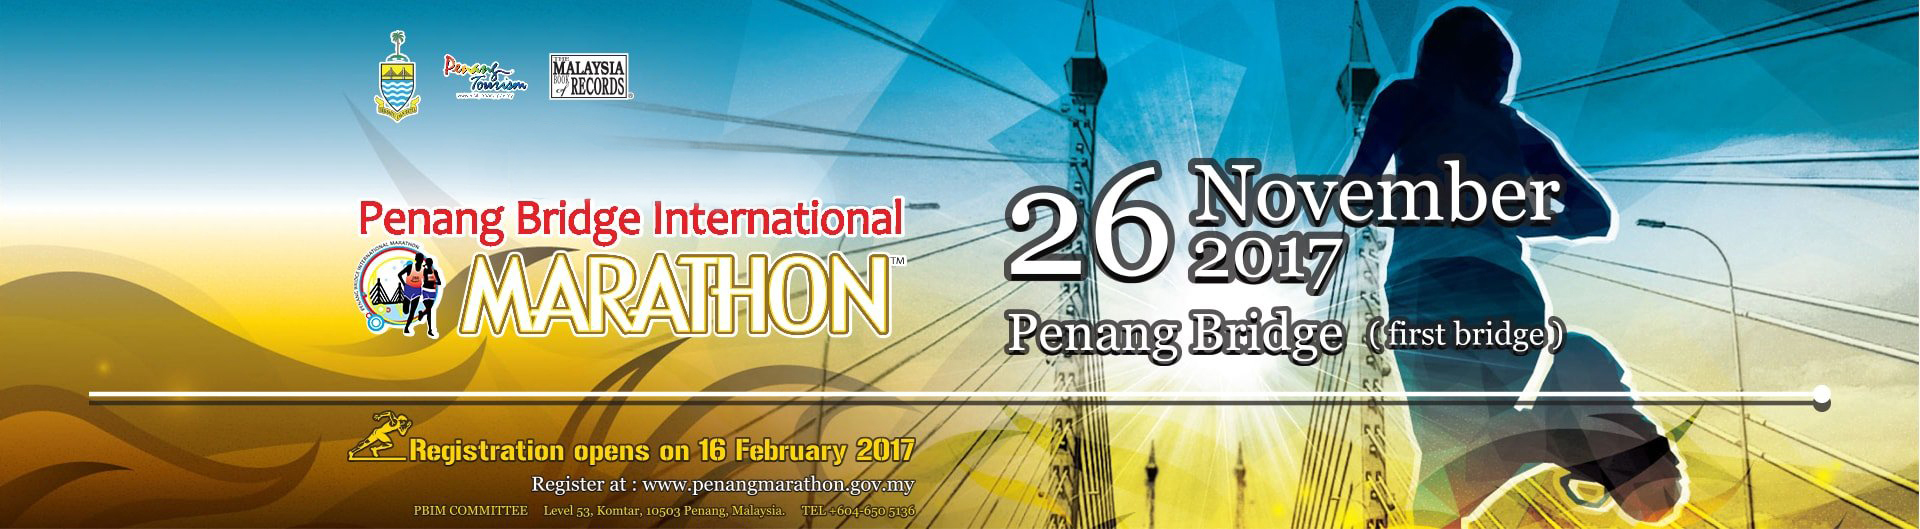 Penang bridge marathon